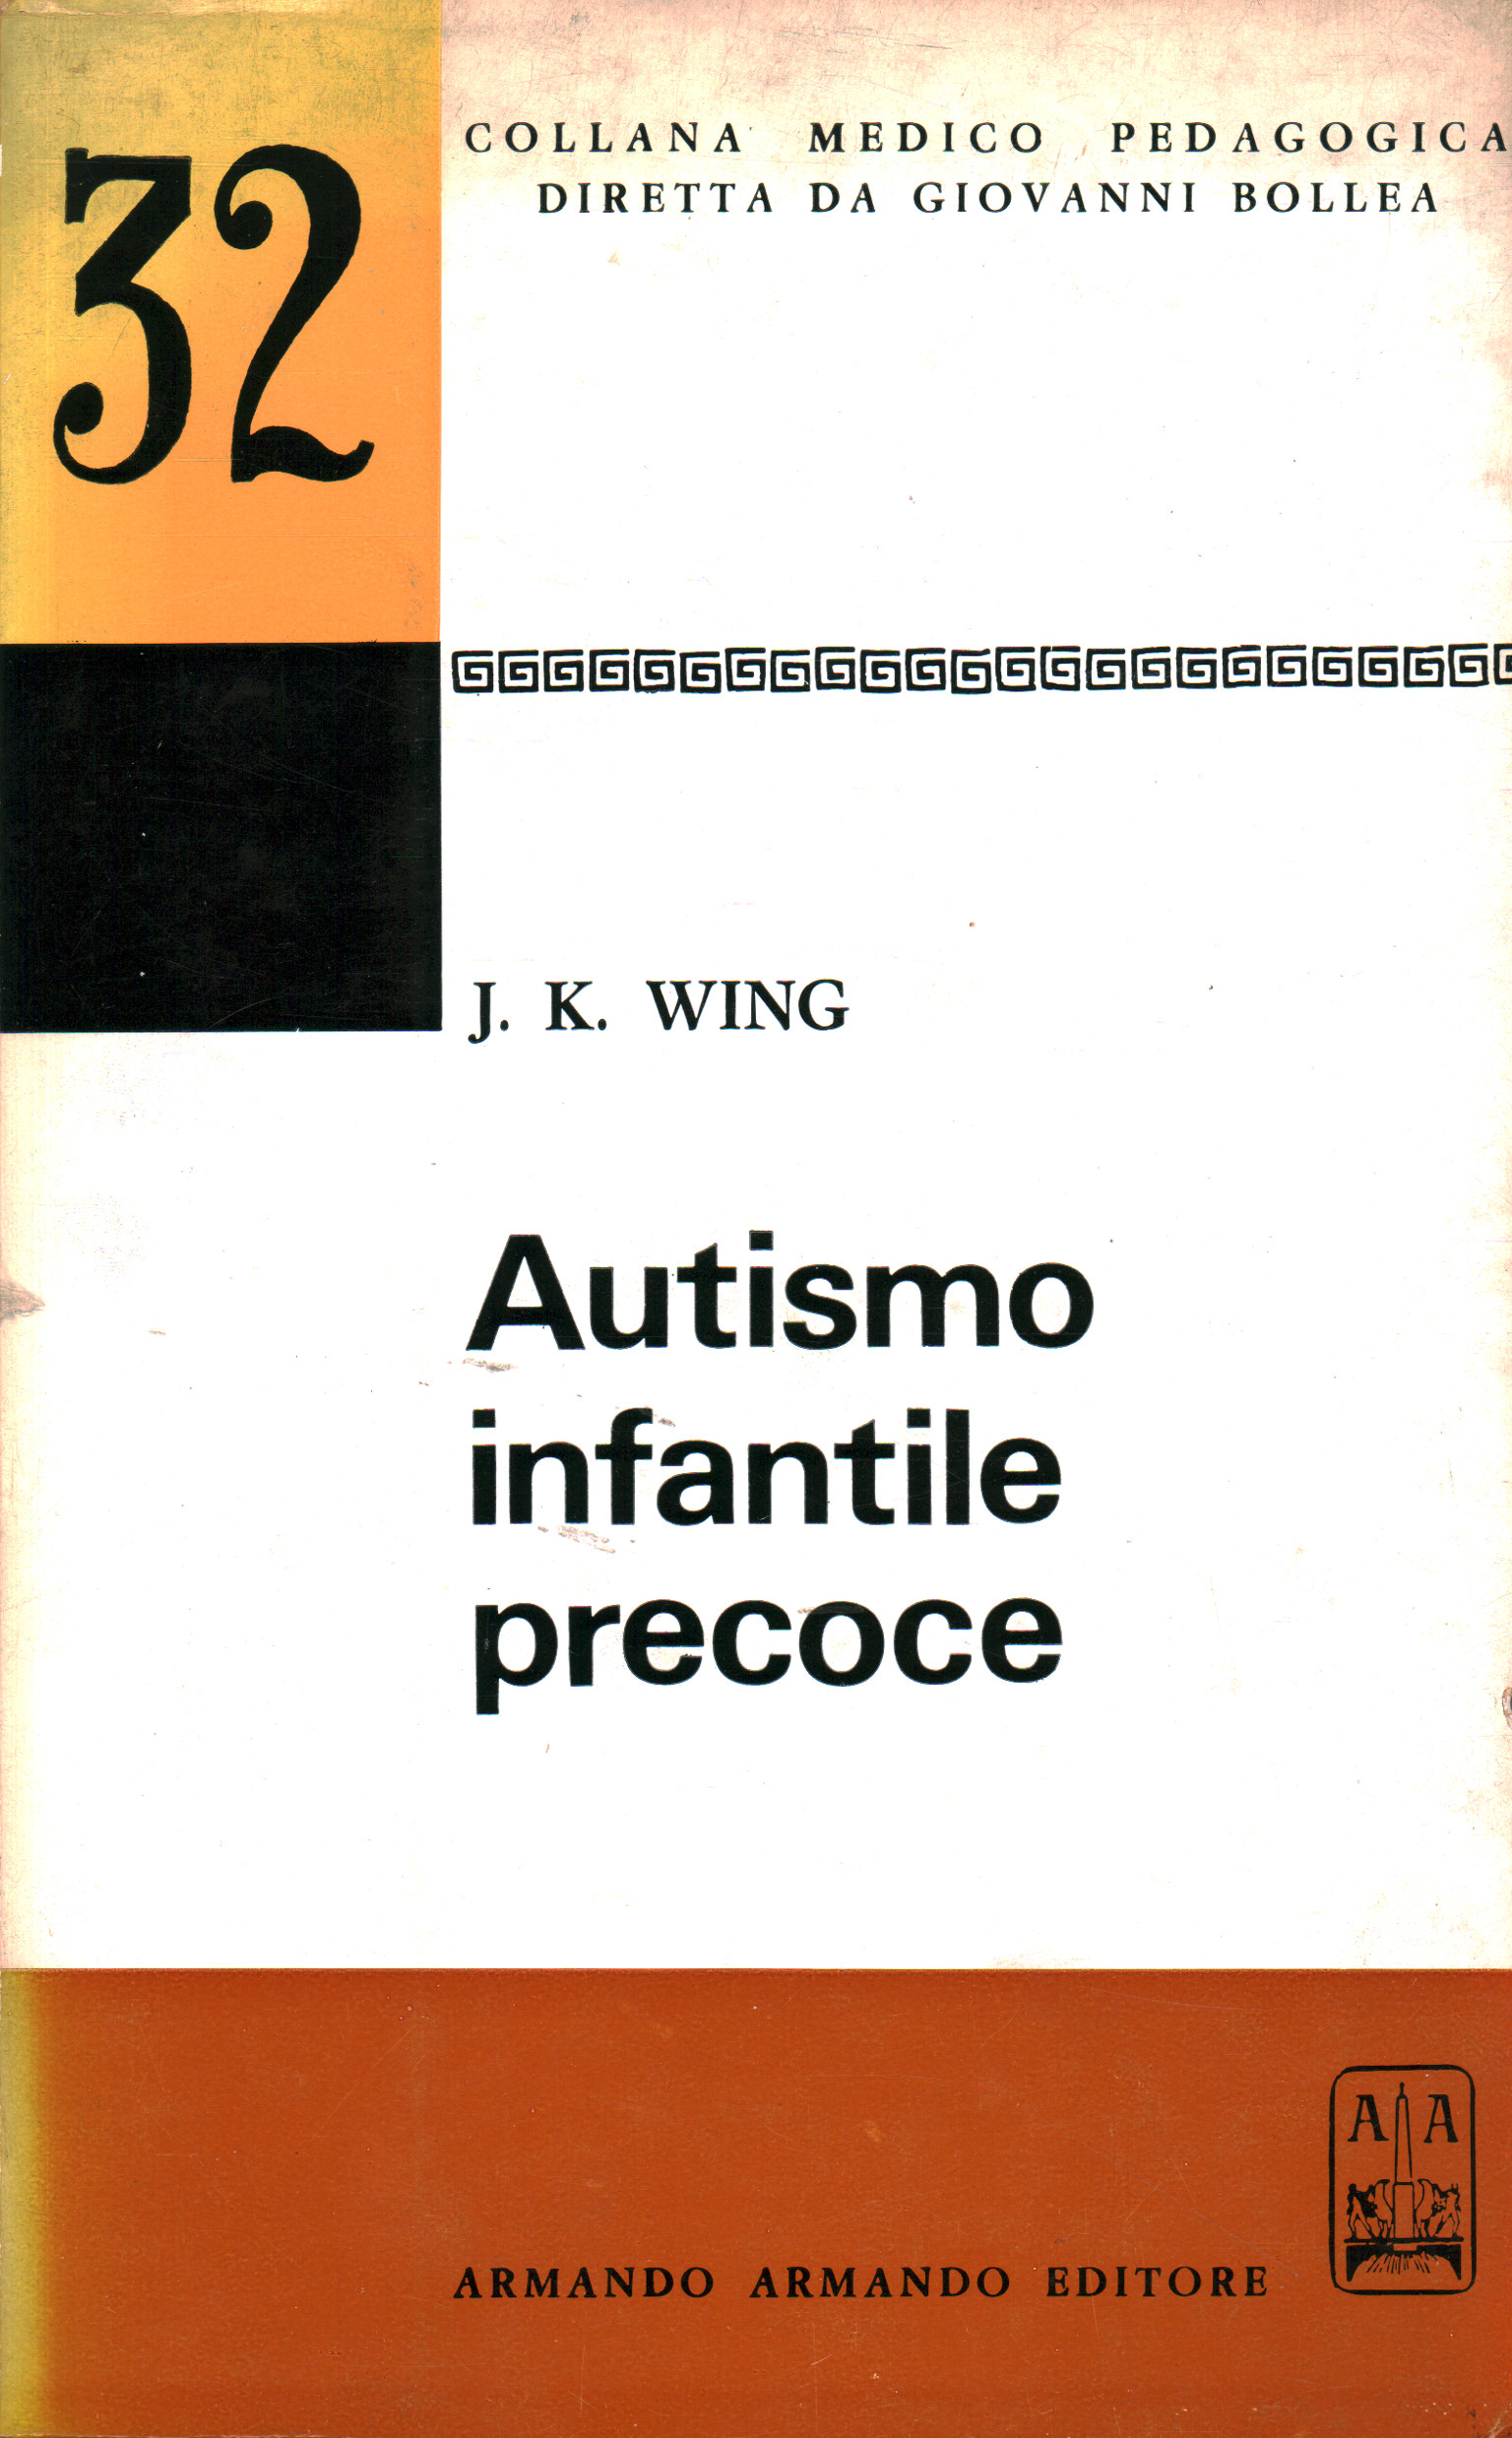 Autismo infantile precoce, J. K. Wing